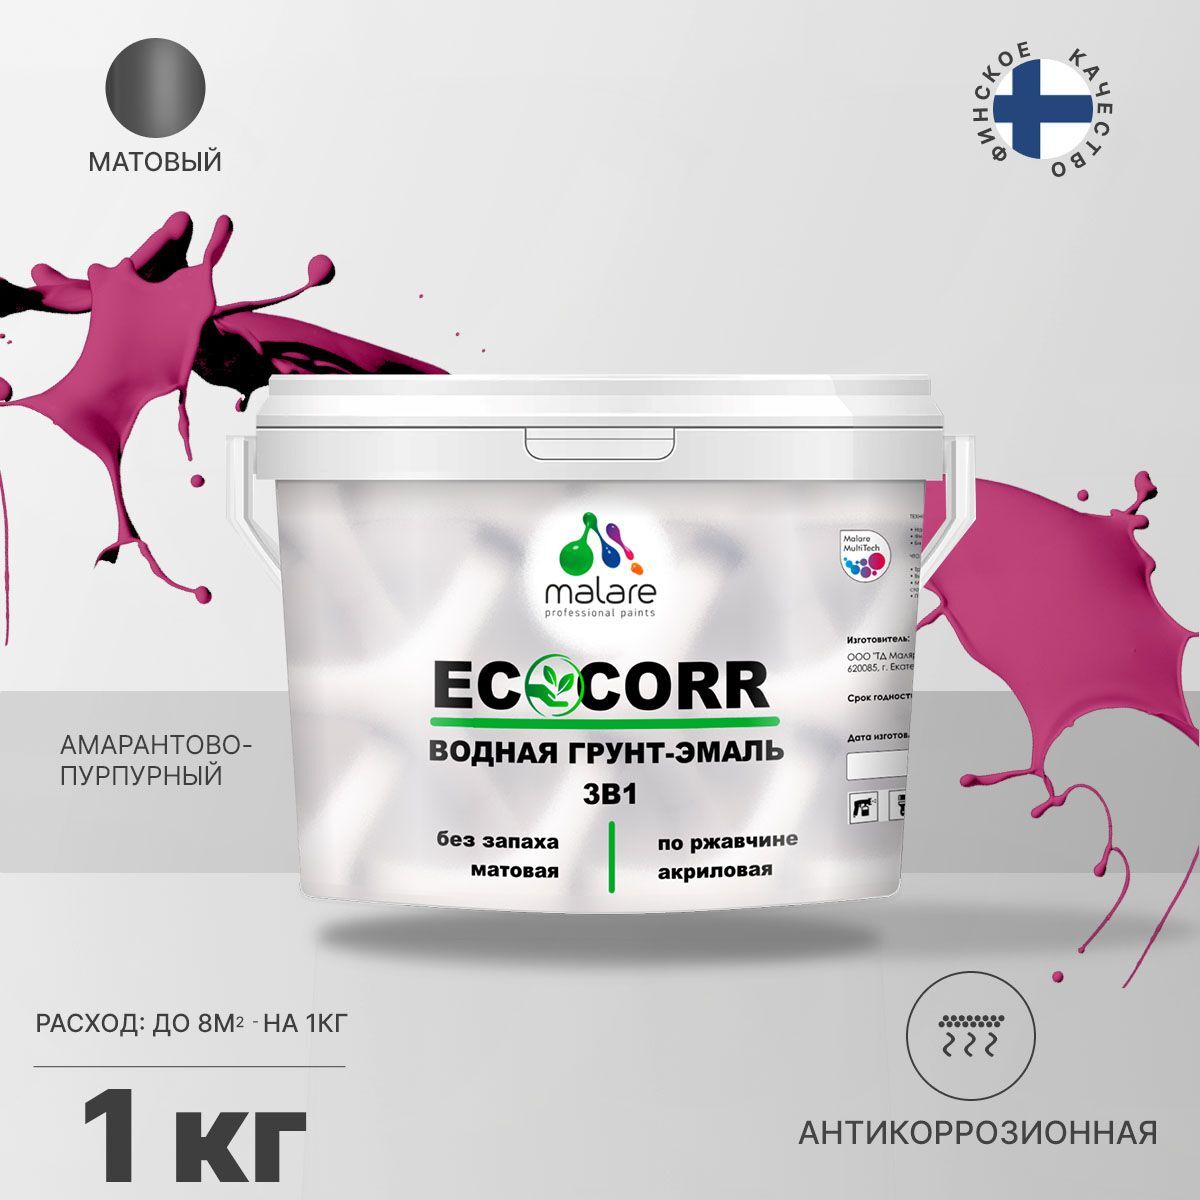 Грунт-эмаль 3 в 1 водная Malare EcoCorr антикоррозионная Акриловая, 1 кг амарантово-пурпурный